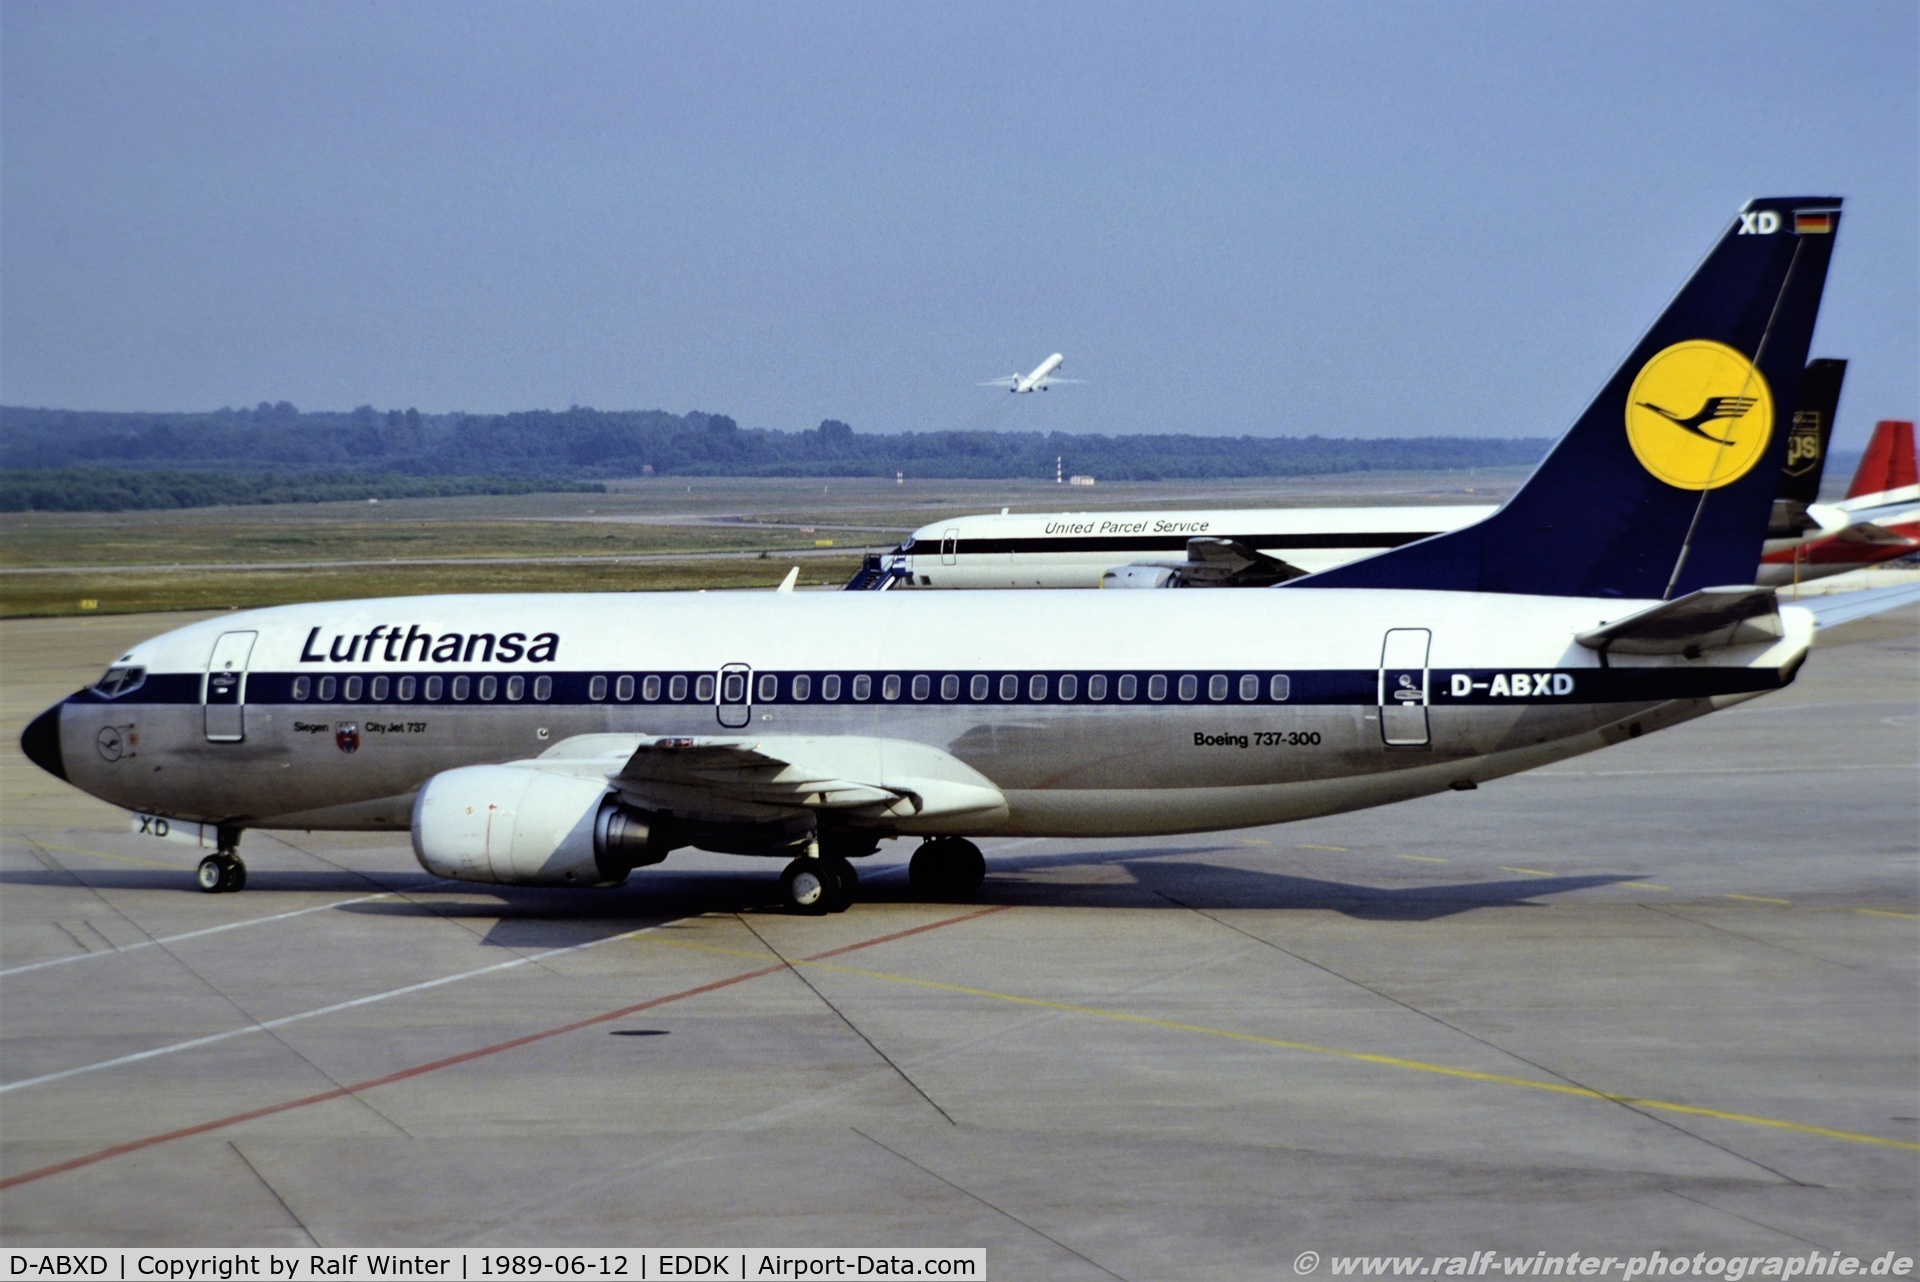 D-ABXD, 1986 Boeing 737-330 C/N 23525, Boeing 737-330 - LH DLH Lufthansa 'Siegen' - 23525 - D-ABXD - 12.06.1989 - CGN